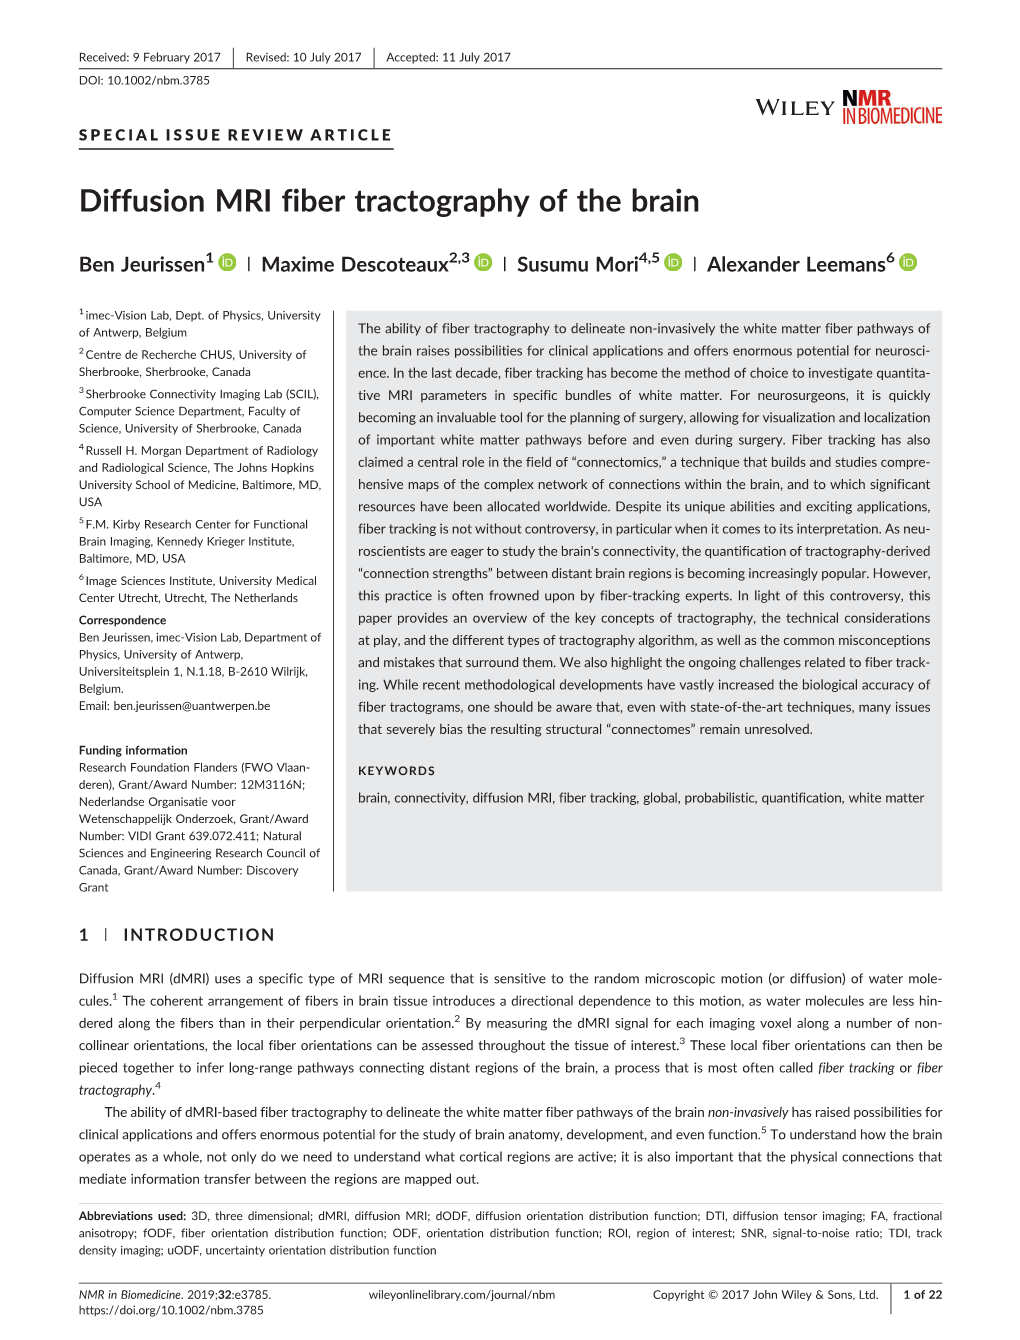 Diffusion MRI Fiber Tractography of the Brain